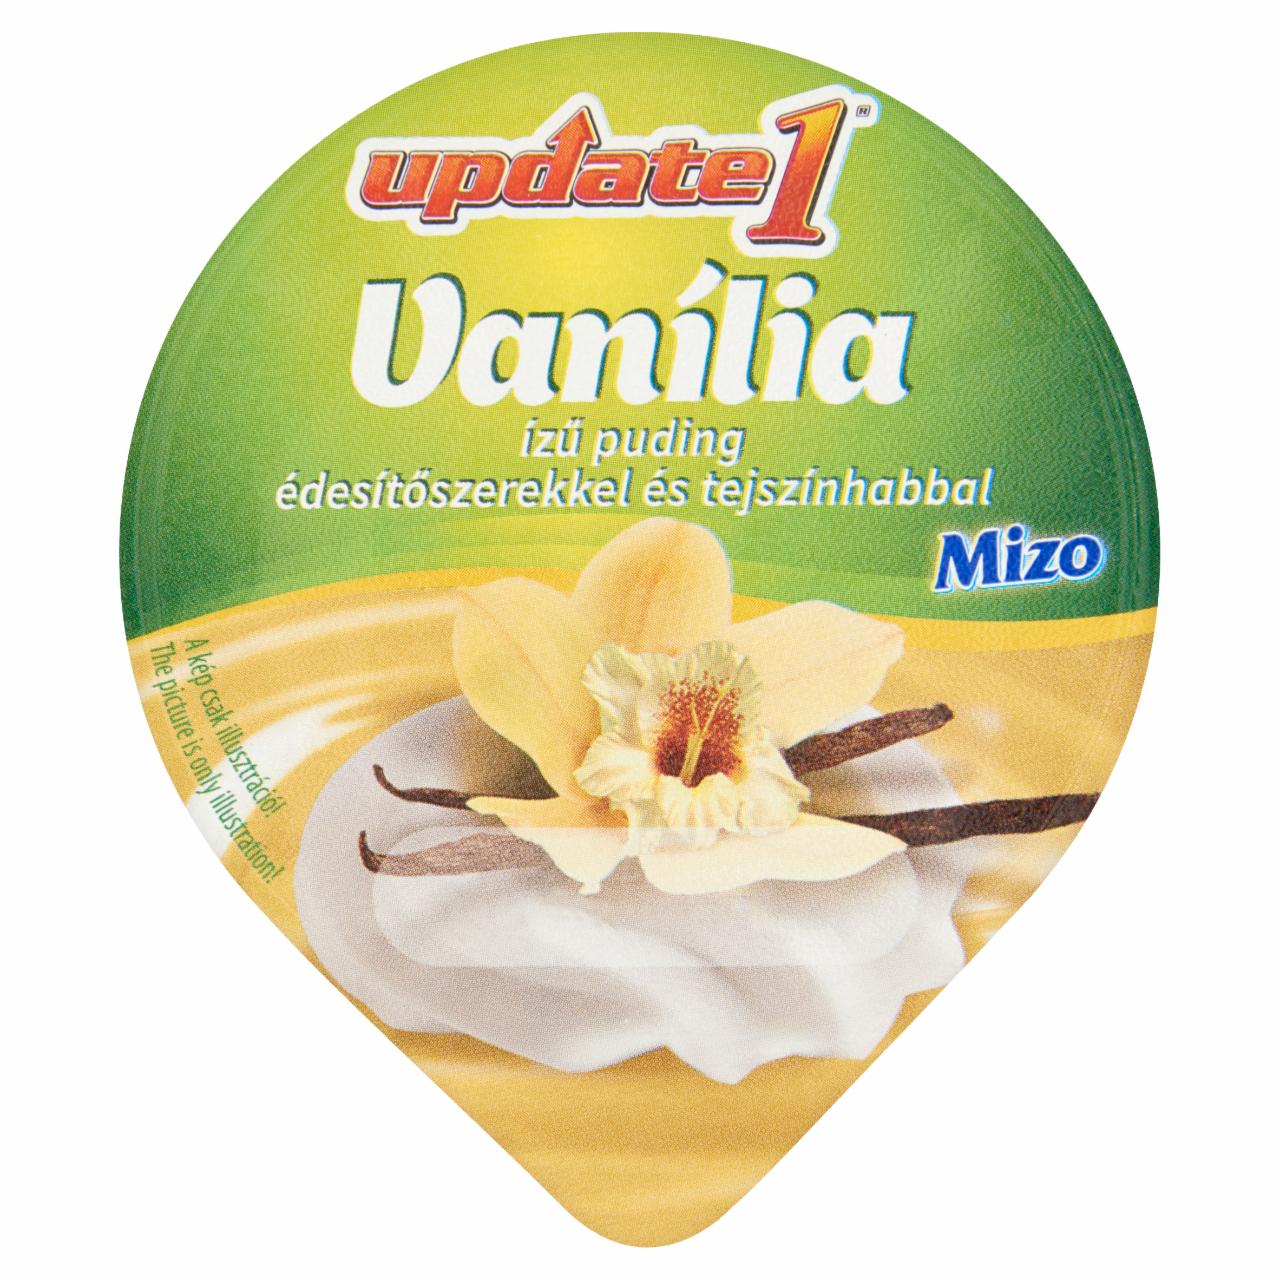 Képek - Mizo Update vanília ízű puding tejszínhabbal hozzáadott cukor nélkül, édesítőszerekkel 125 g